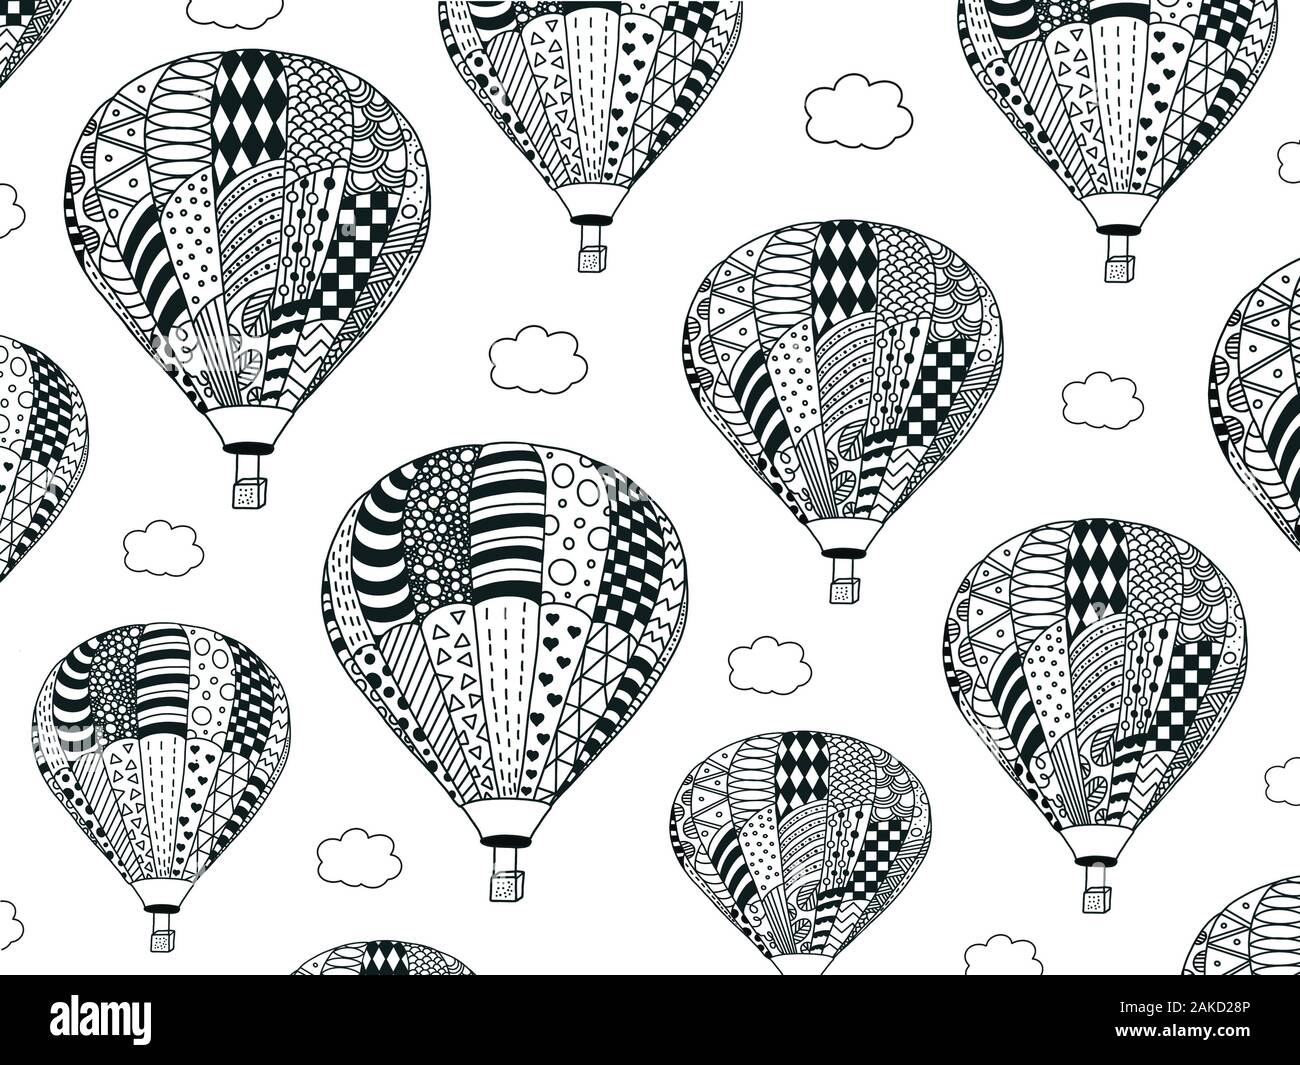 Pagina di colorazione di molti battenti di palloncini con le nuvole.Antistress magic zentangle da colorare per bambini e adulti. Applicazione in materiali stampati. Foto Stock